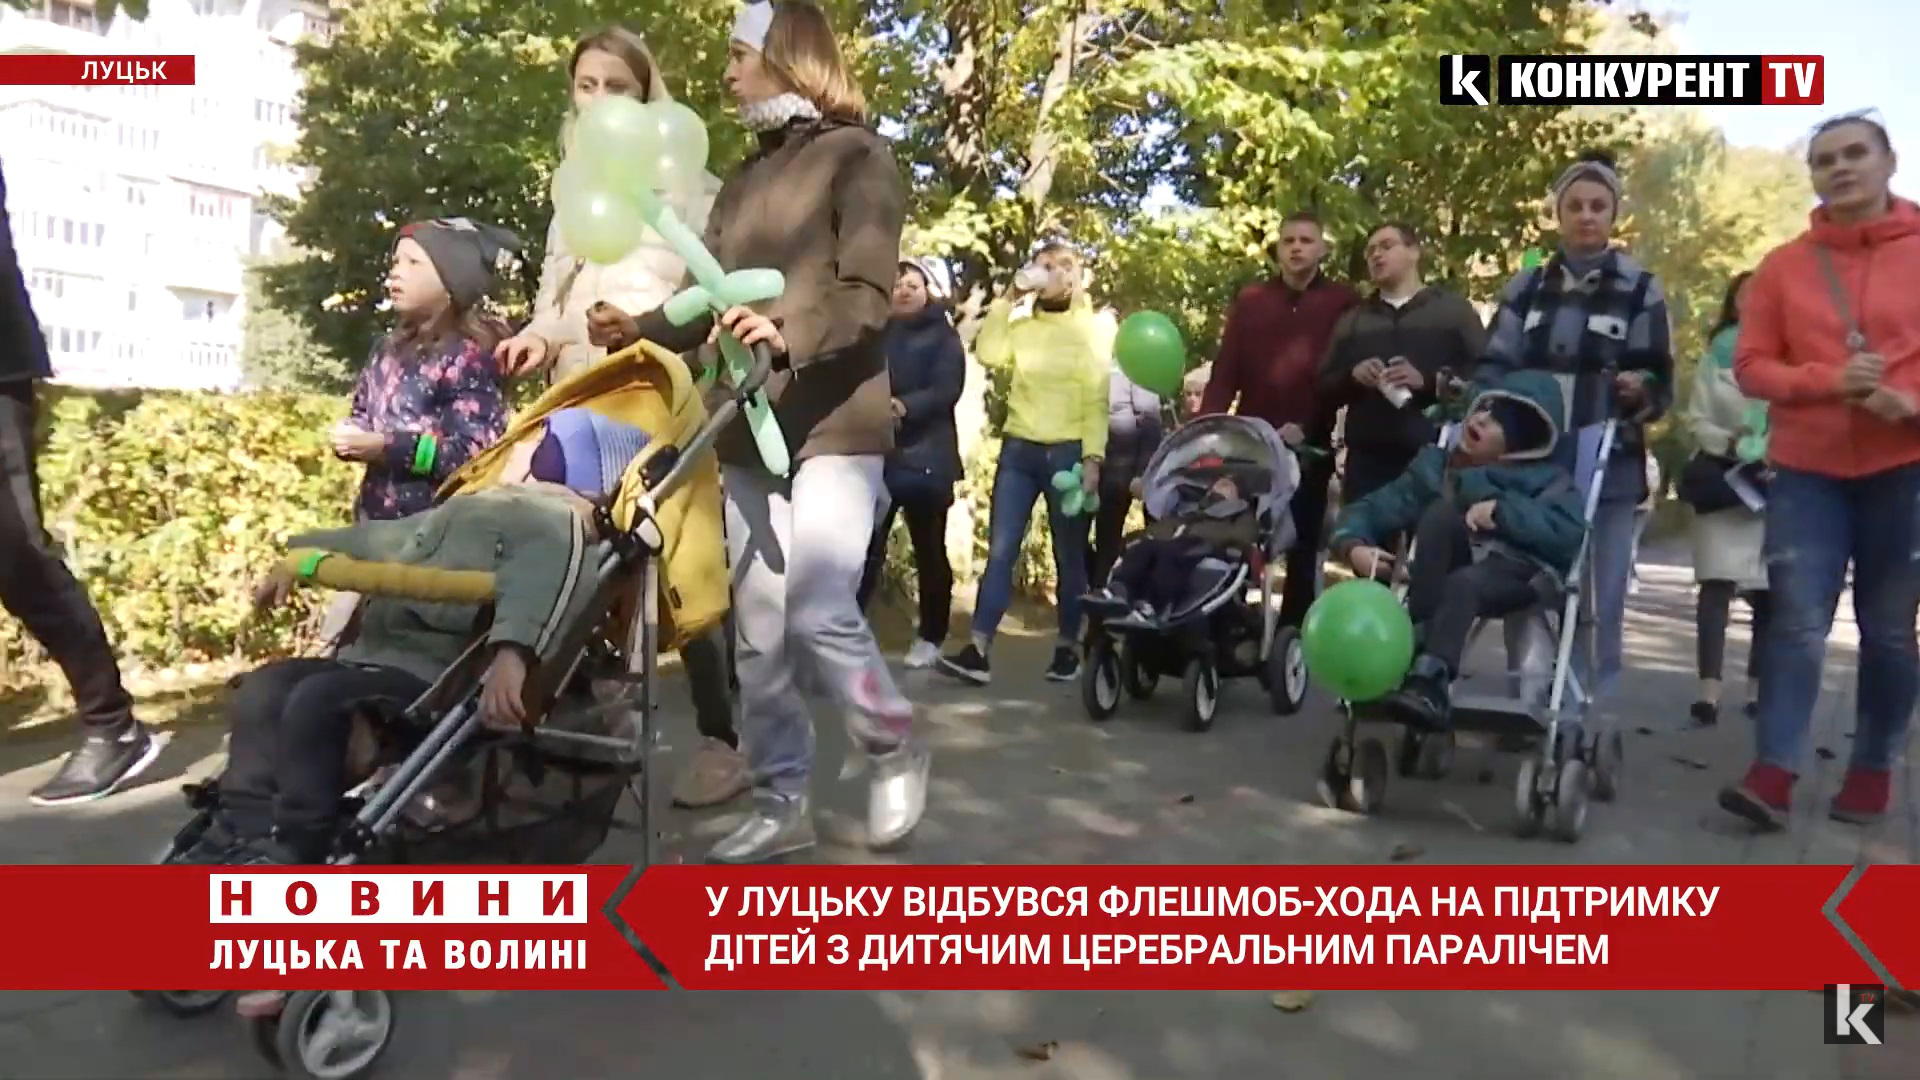 У Луцьку відбулася флешмоб-хода на підтримку дітей з ДЦП (відео)